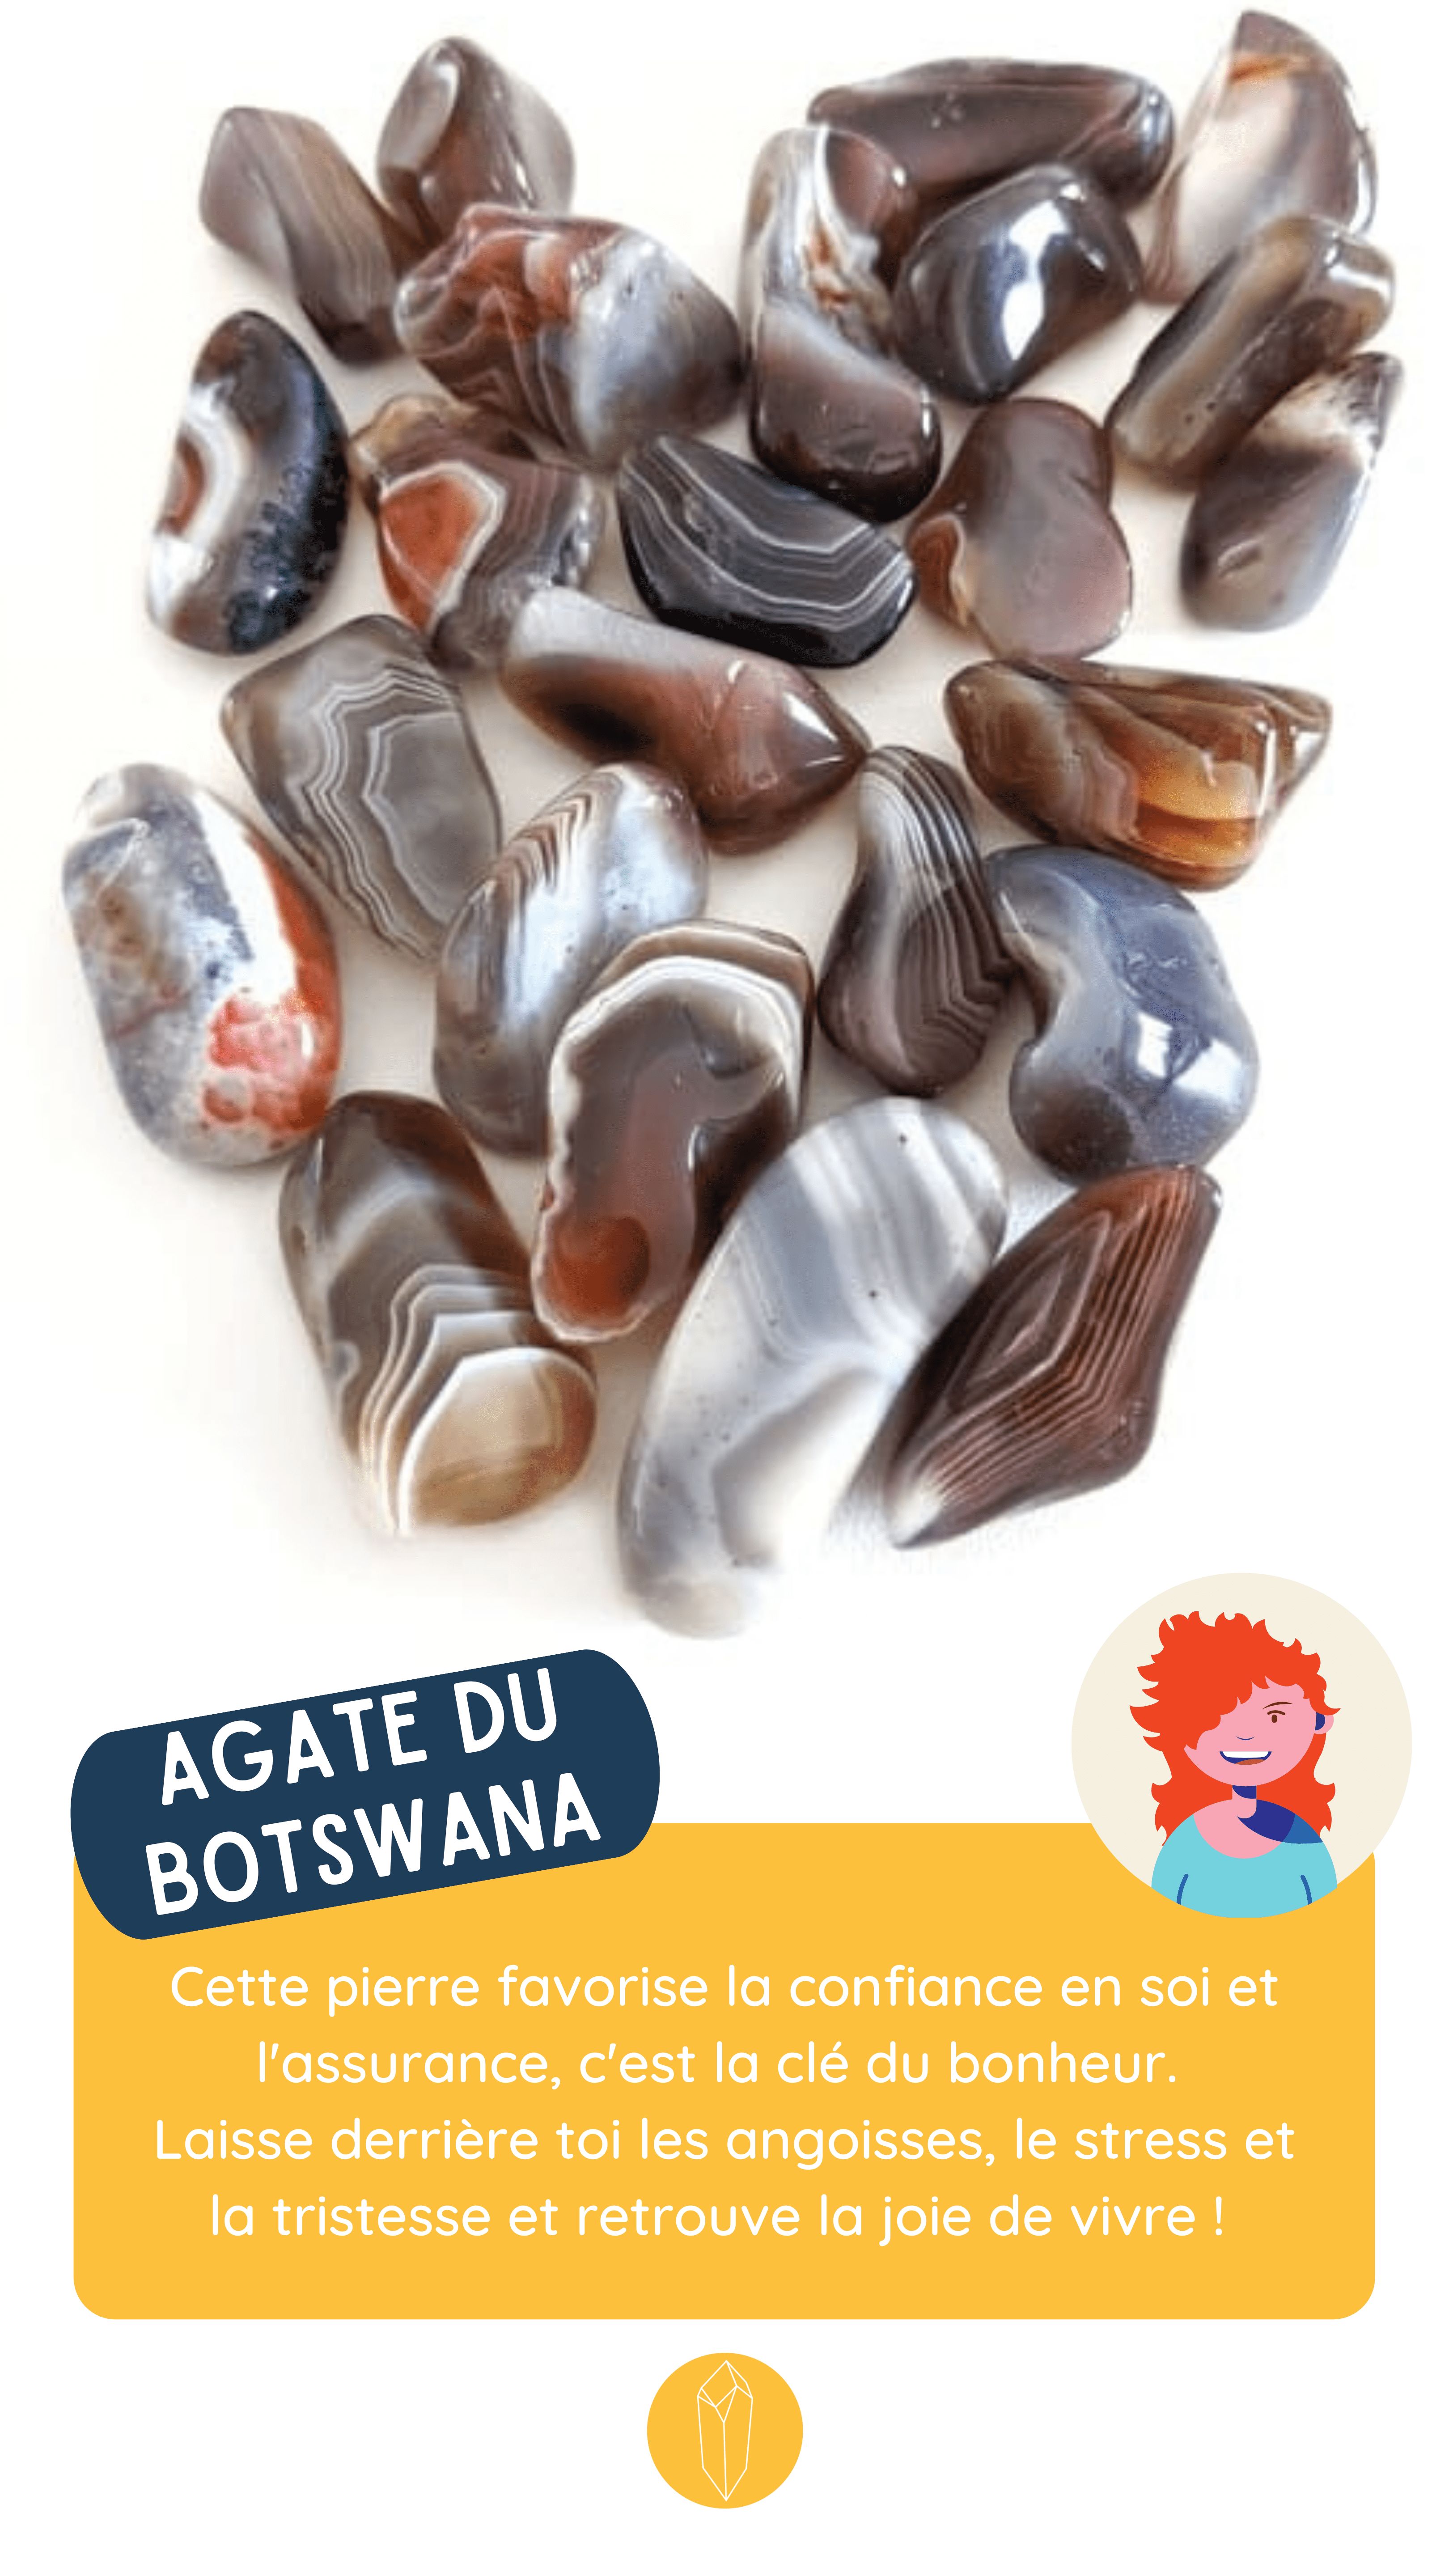 Bienfaits de l'agate du botswana